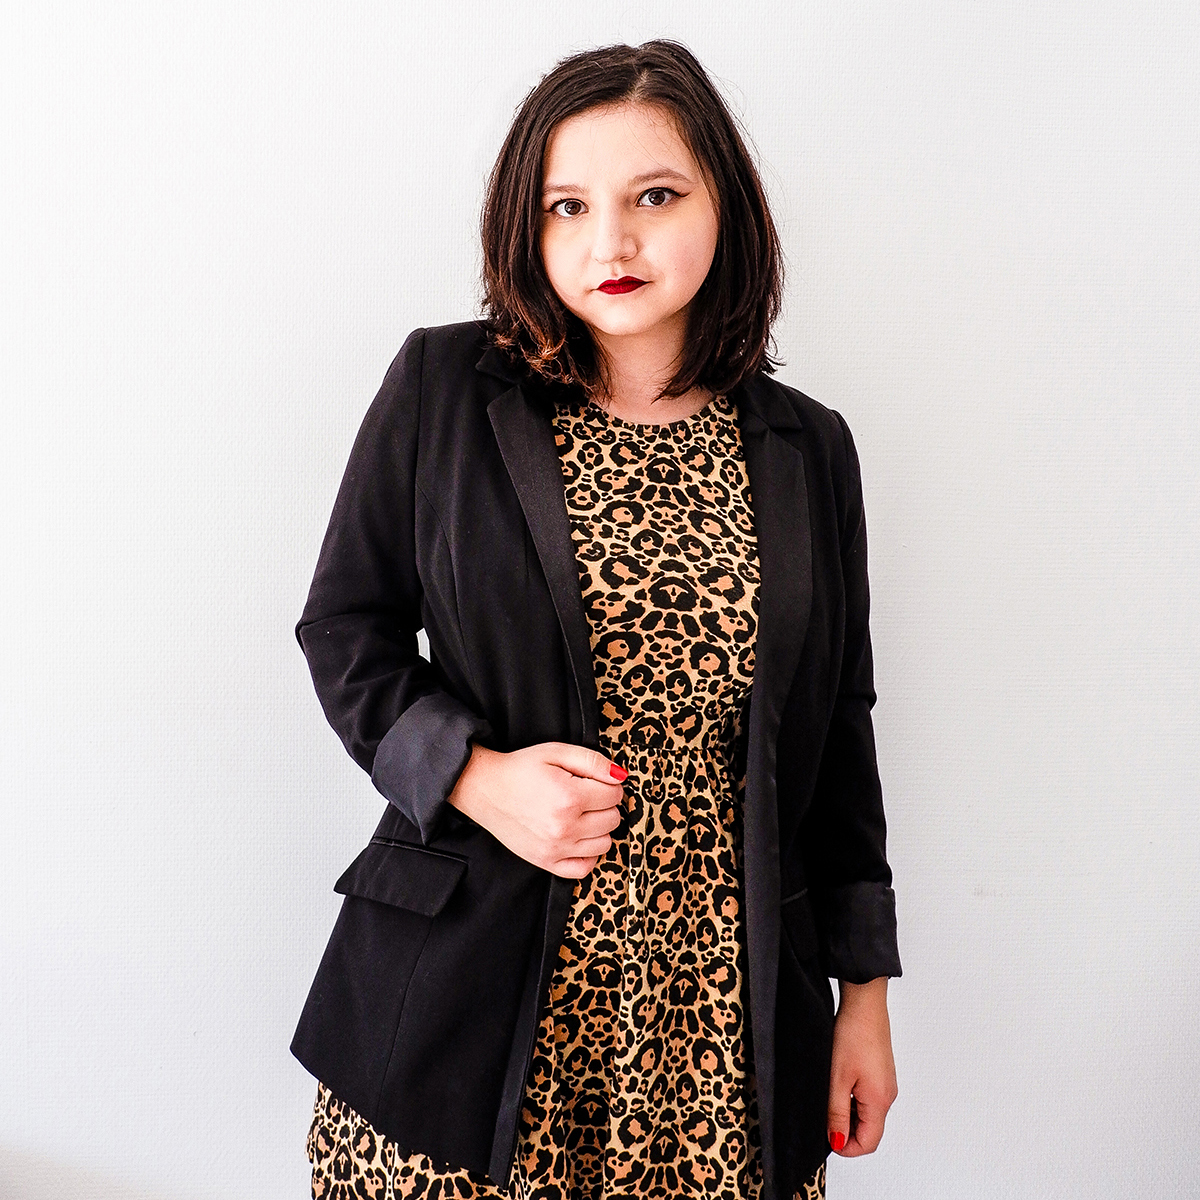 Leopard Print Dress with black blazer